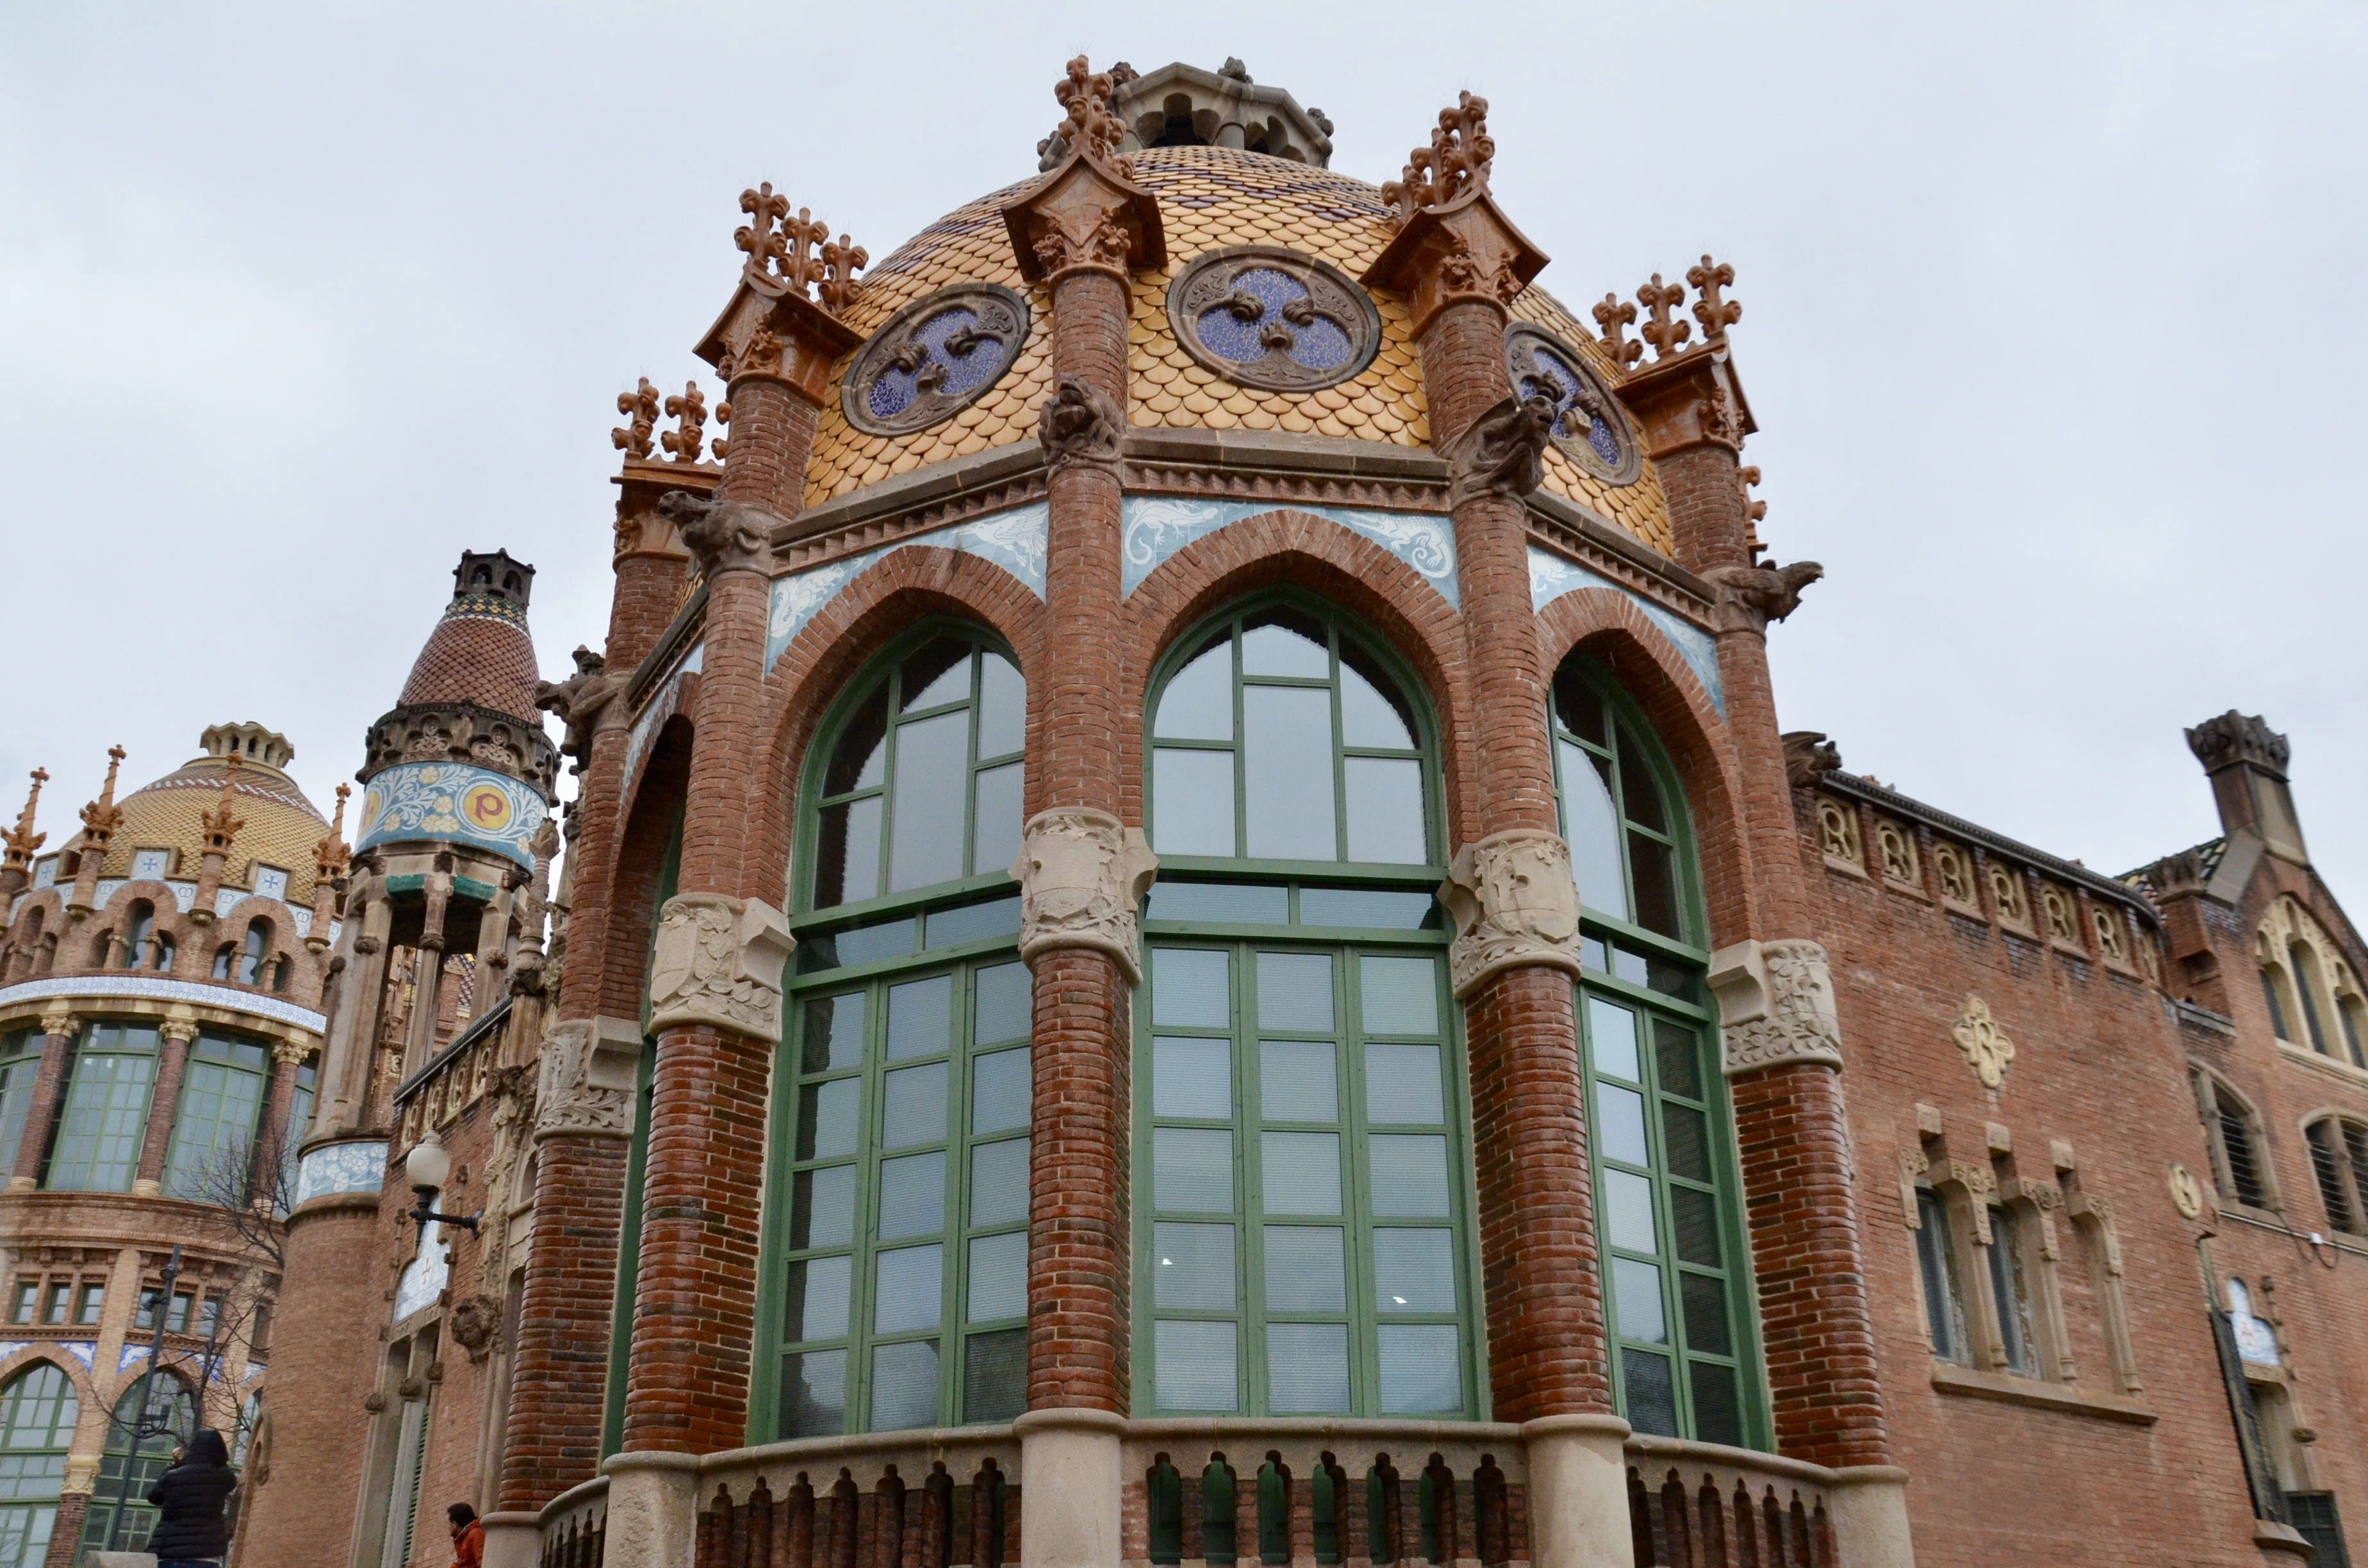 Sant Pau Art Nouveau Site, Barcelona: All year